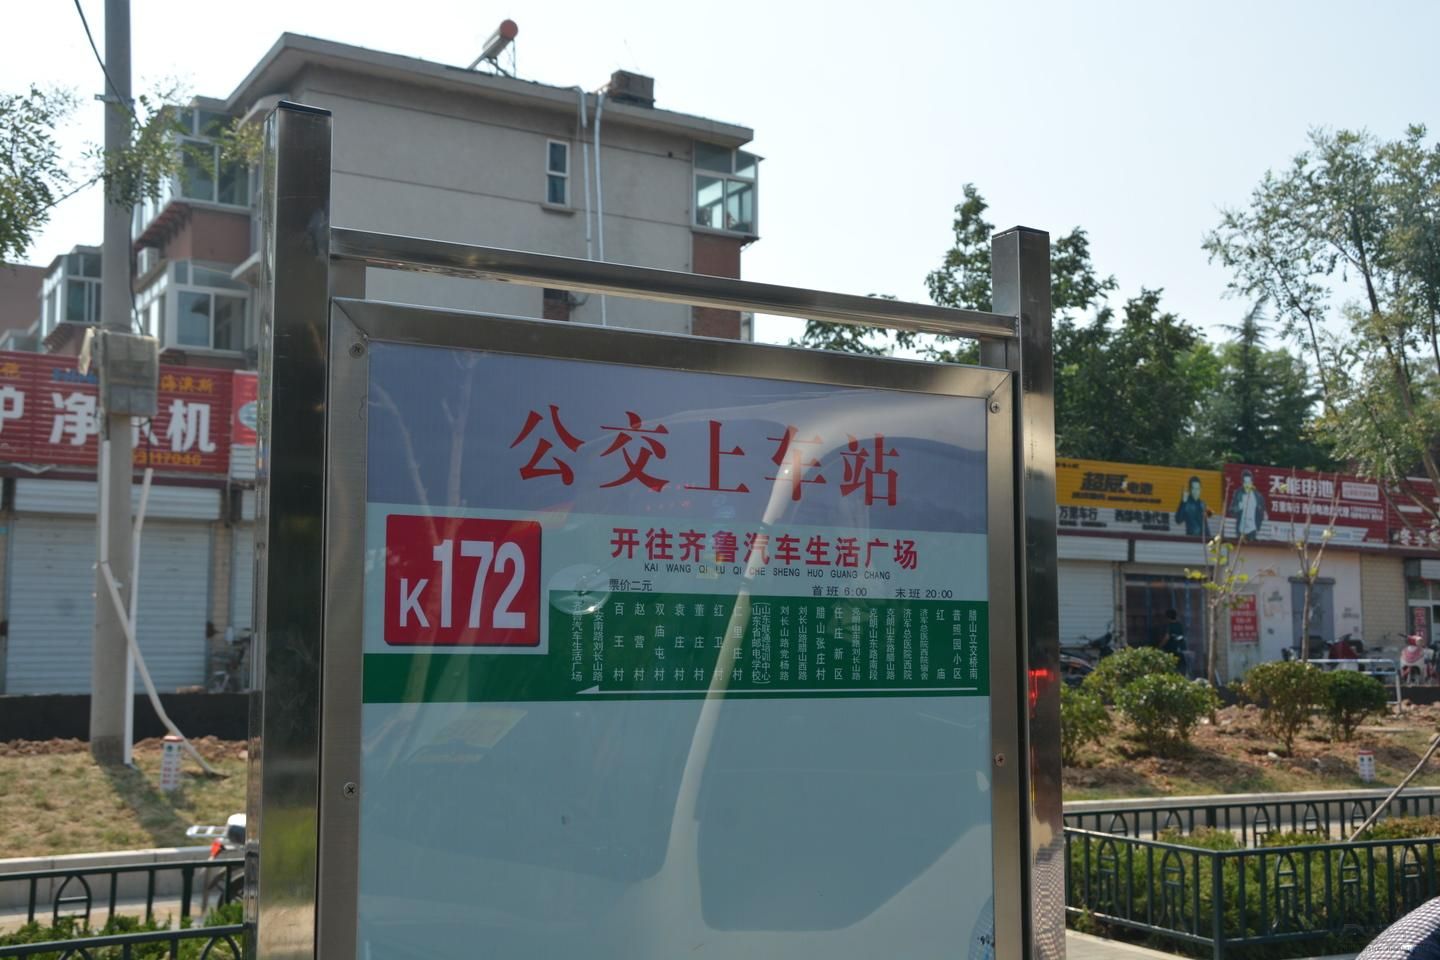 濟南公交K172路